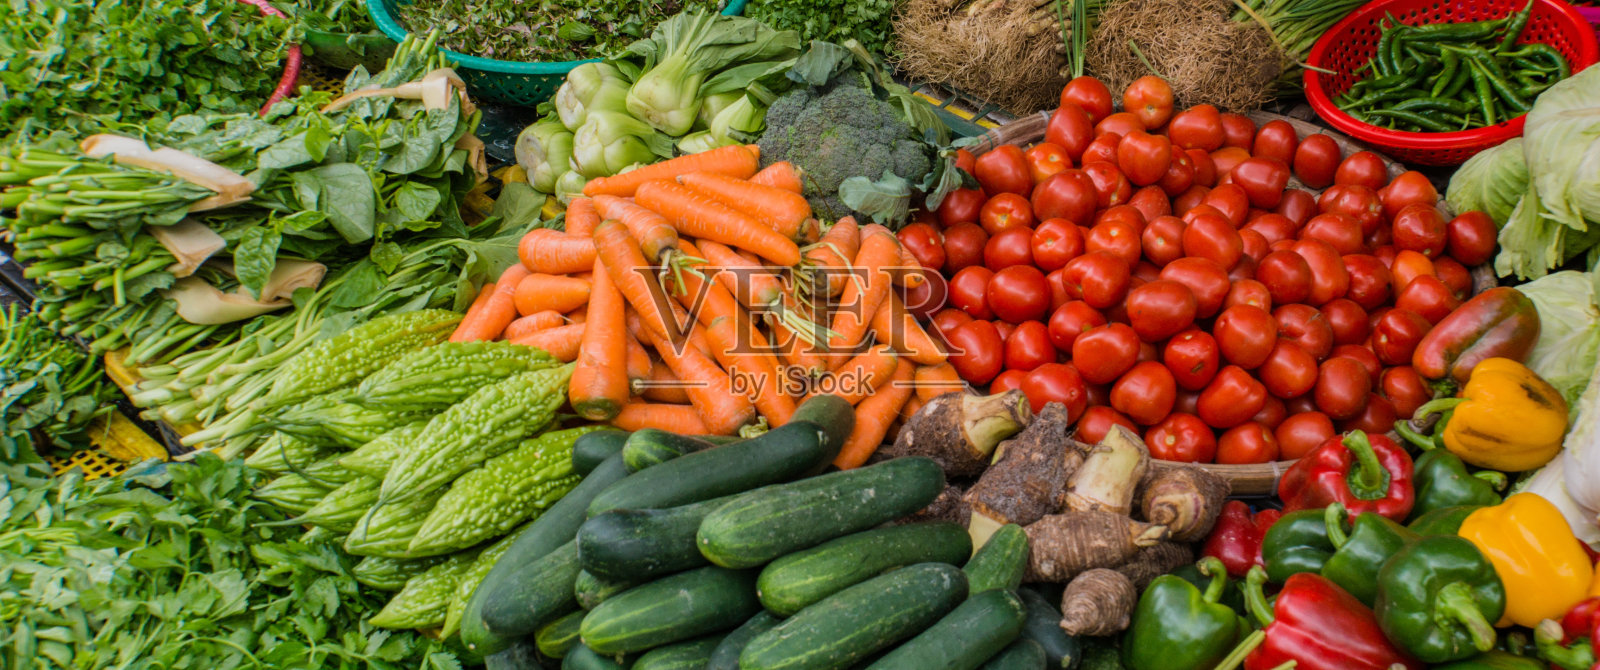 有许多蔬菜的市场摊位照片摄影图片